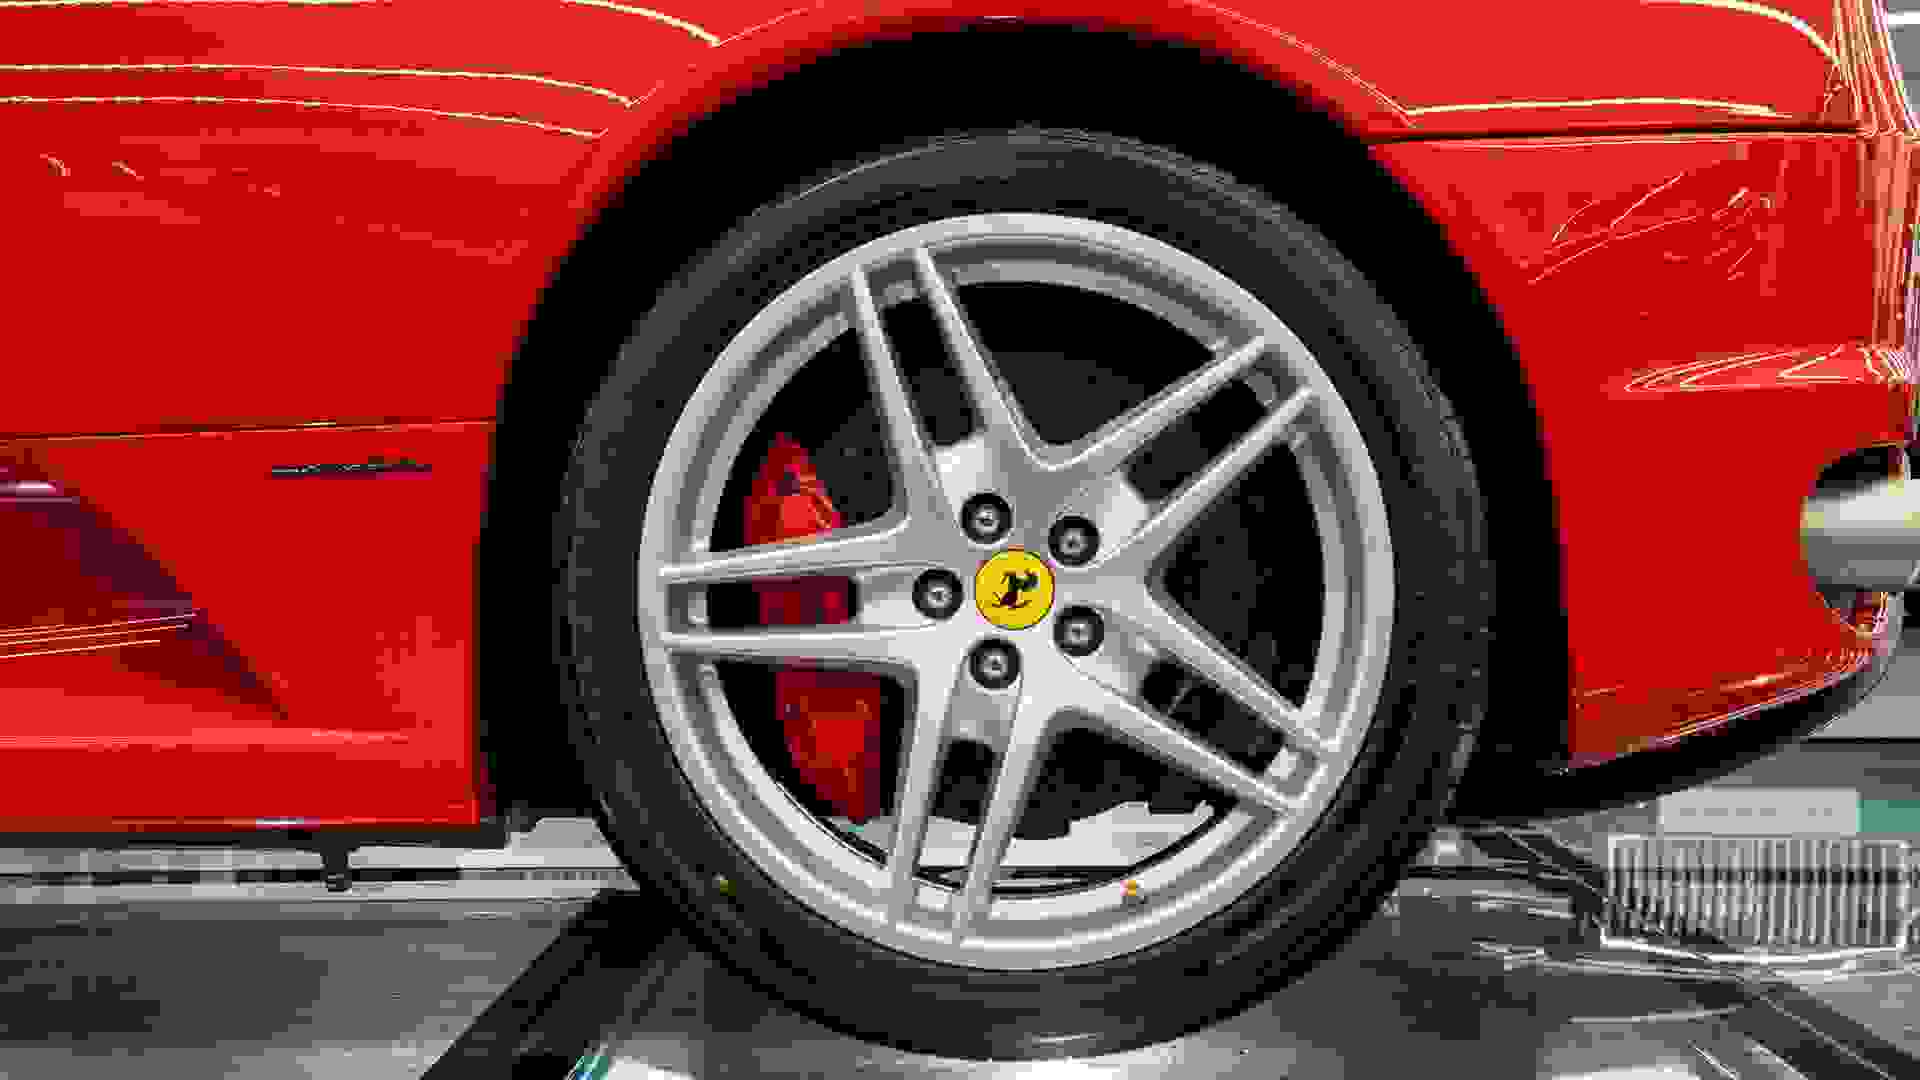 Ferrari F430 Photo a1481fce-48f4-4206-9049-c1b38b685faa.jpg